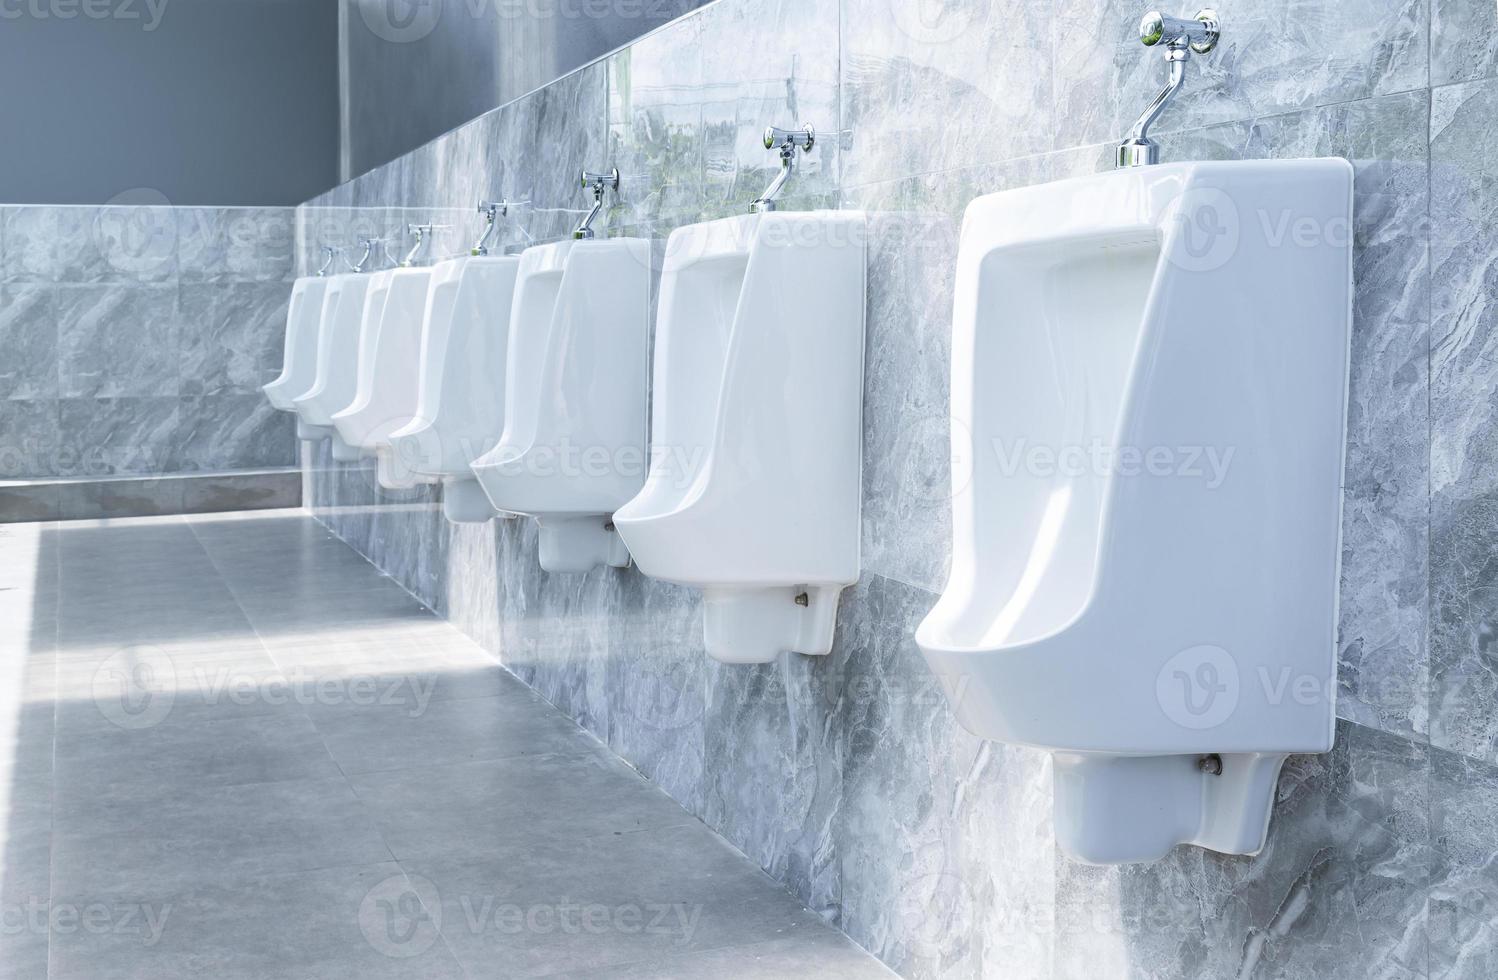 Mannen kamer met wit porselein urinoirs in lijn in gas- station foto